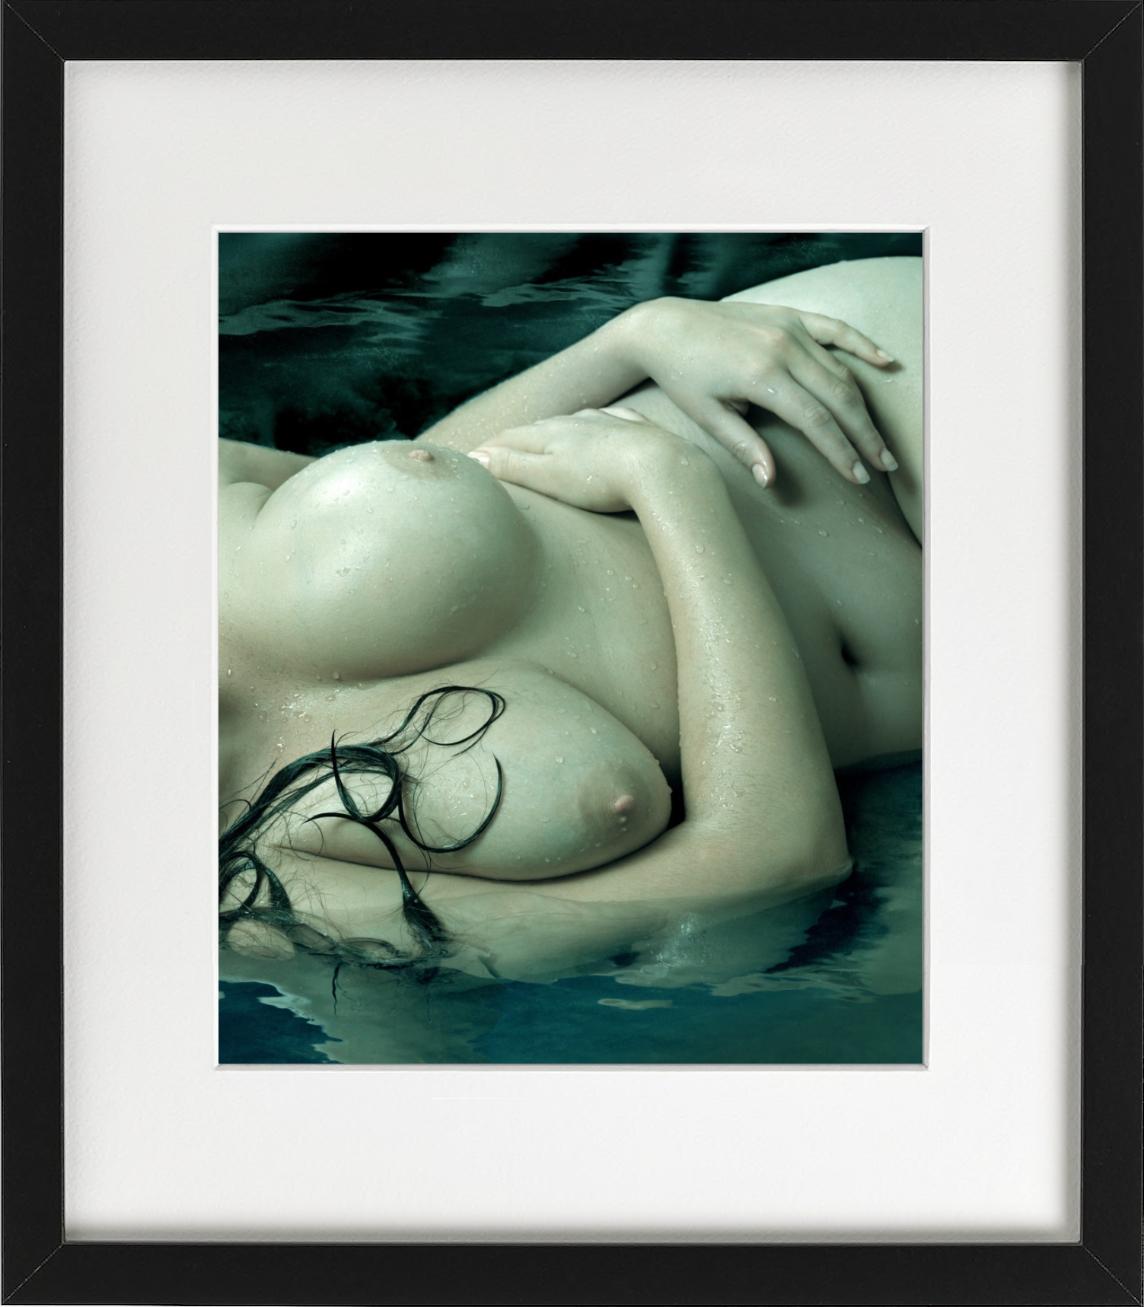 Jennifer Breasts – grün beleuchteter nackter Torso in Wasser, Pistographie der bildenden Kunst, 2011 (Schwarz), Color Photograph, von Albert Watson